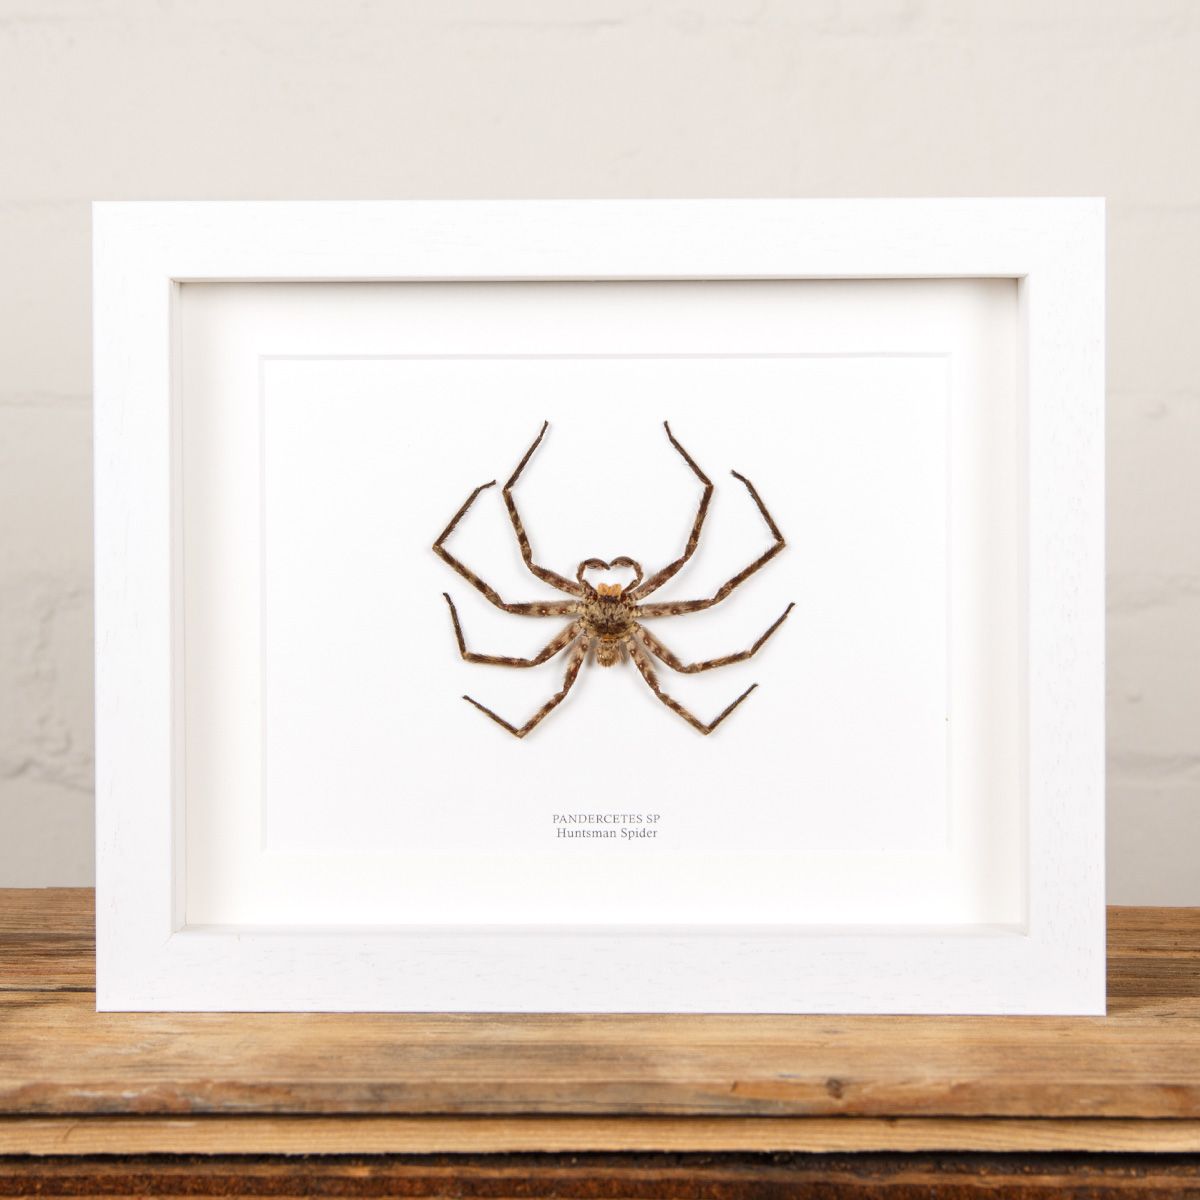 Huntsman Spider in Box Frame (Pandercetes sp)